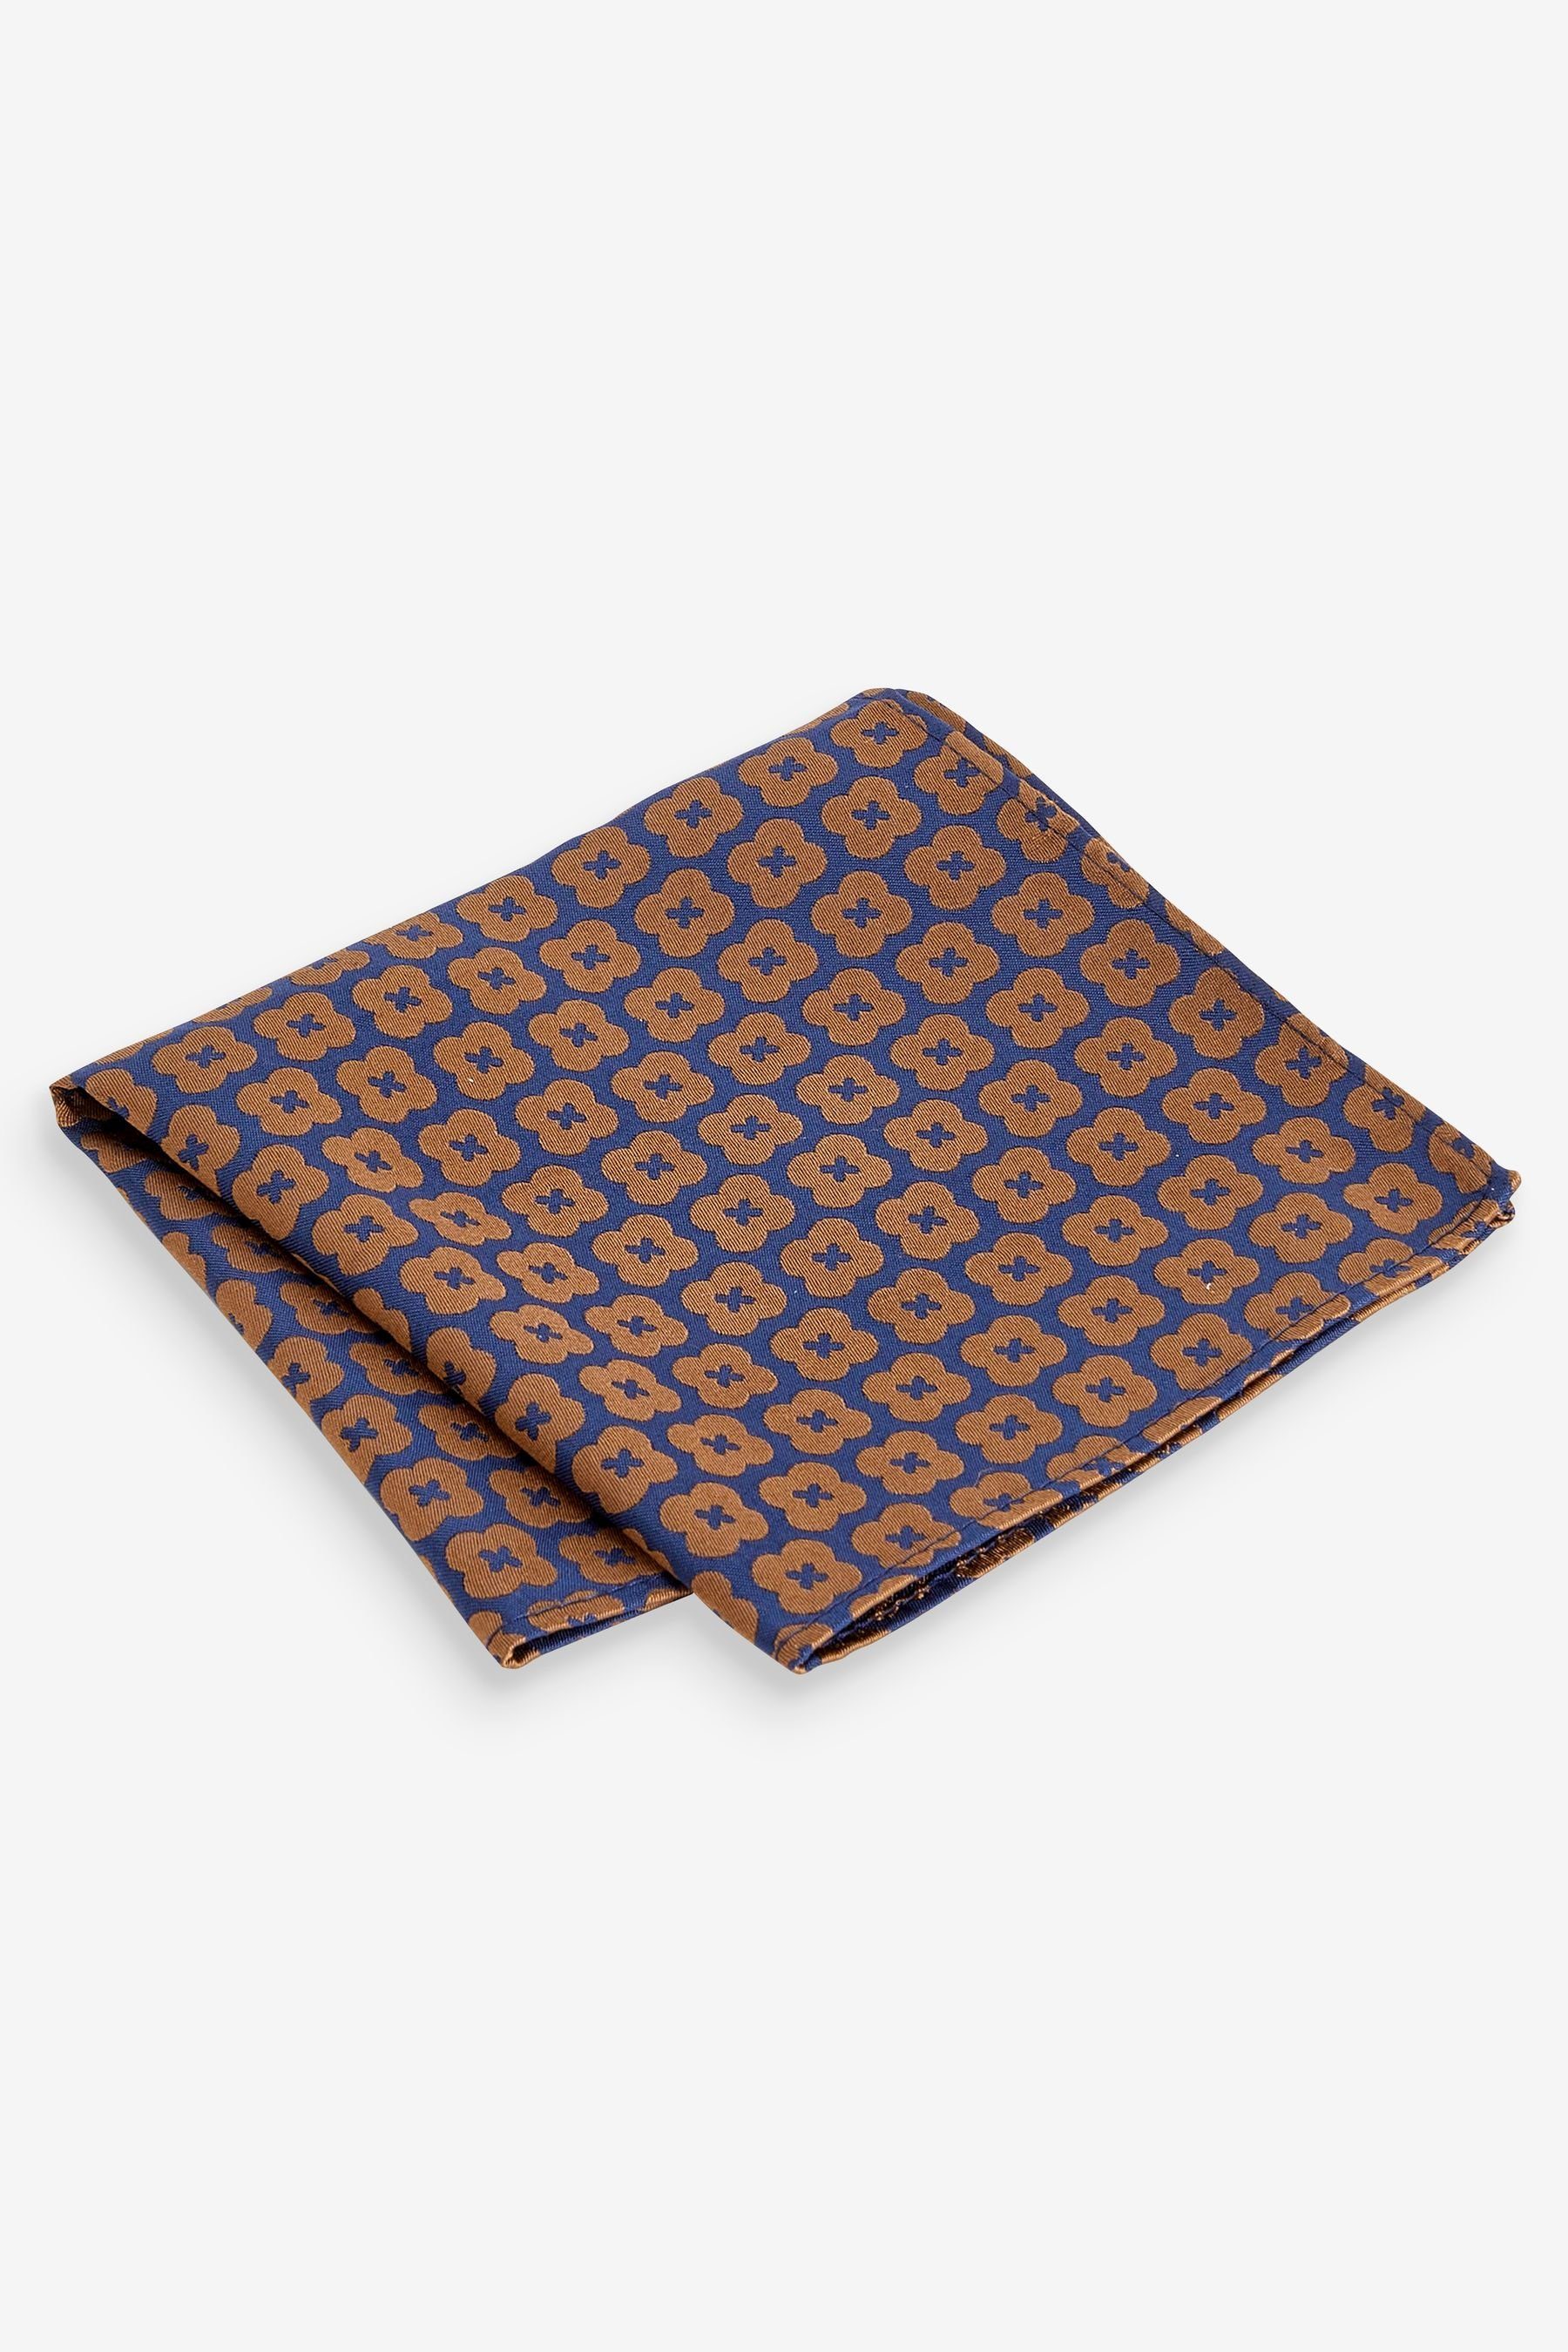 Next Krawatte Set aus Navy Einstecktuch Geometric und Brown (2-St) Blue/Rust Seidenkrawatte